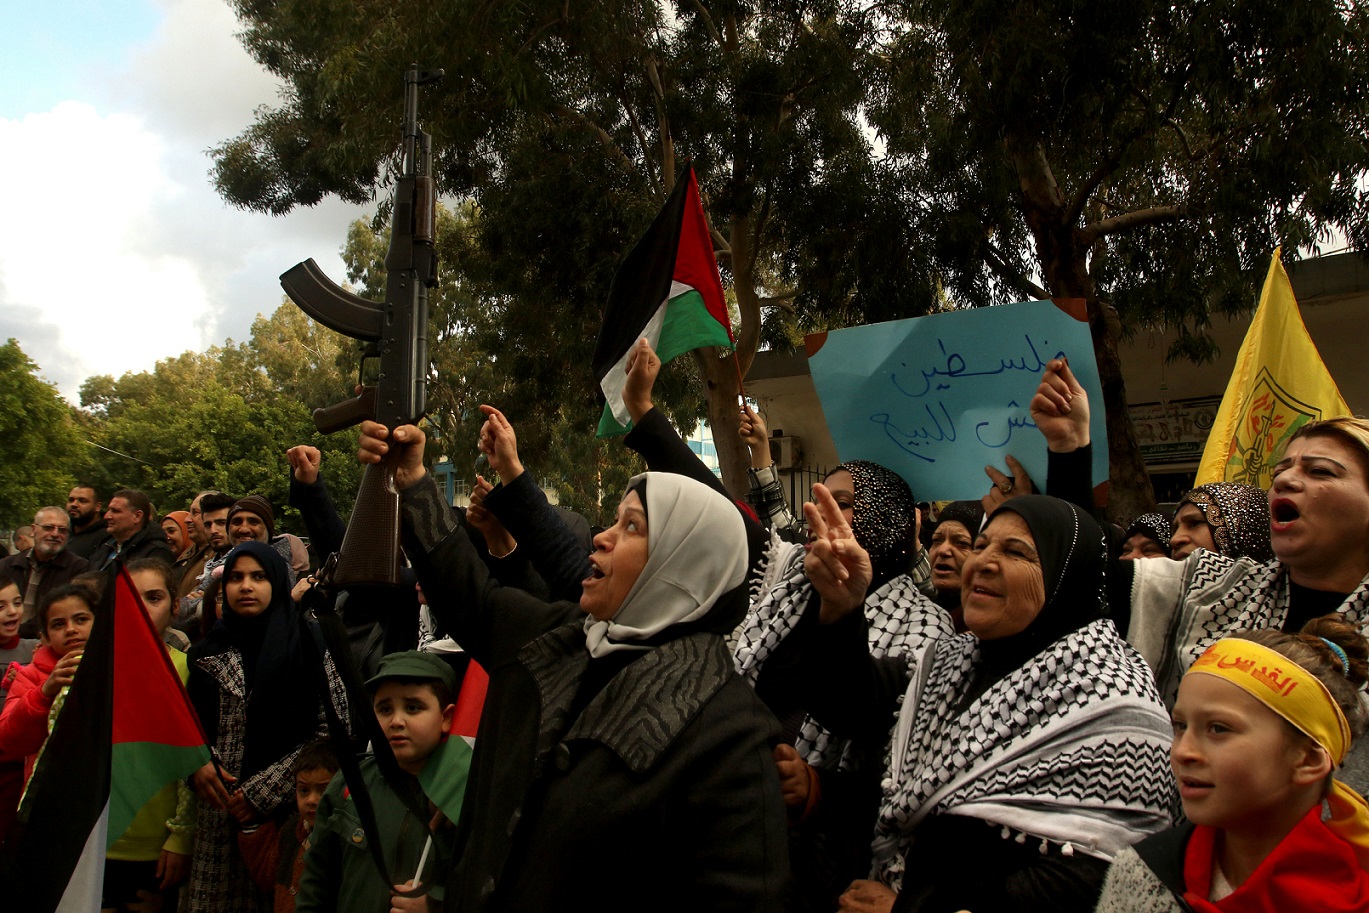 Des femmes manifestent dans le camp de réfugiés palestiniens de Rashidiyah contre le plan « Vision pour la paix » du président américain Donald Trump, le 29 janvier (AFP)